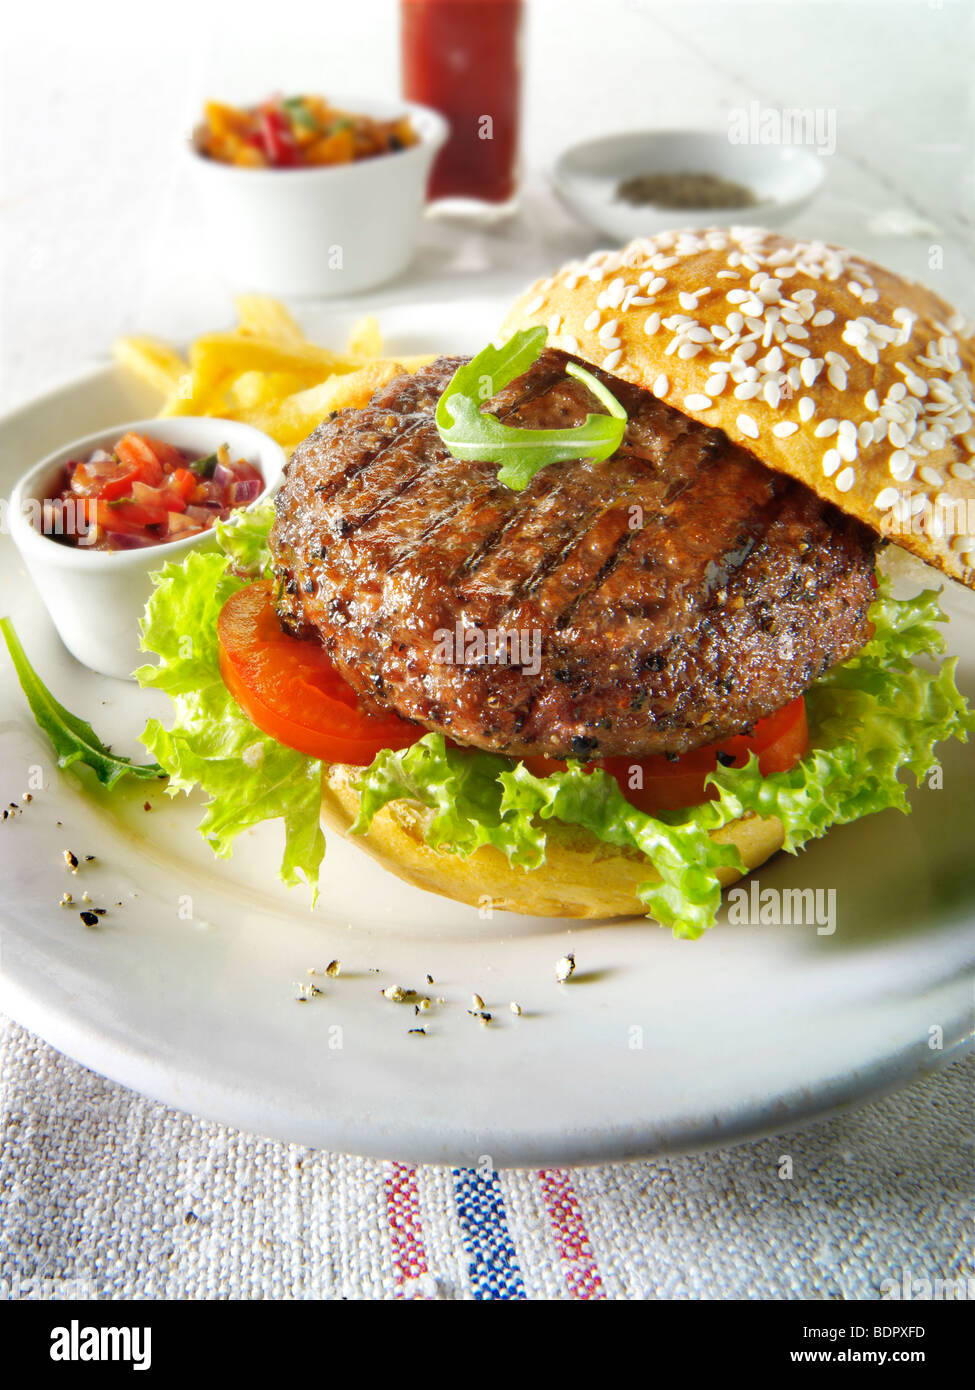 Burger de boeuf grillé avec frites et salade et un seseme bun Banque D'Images